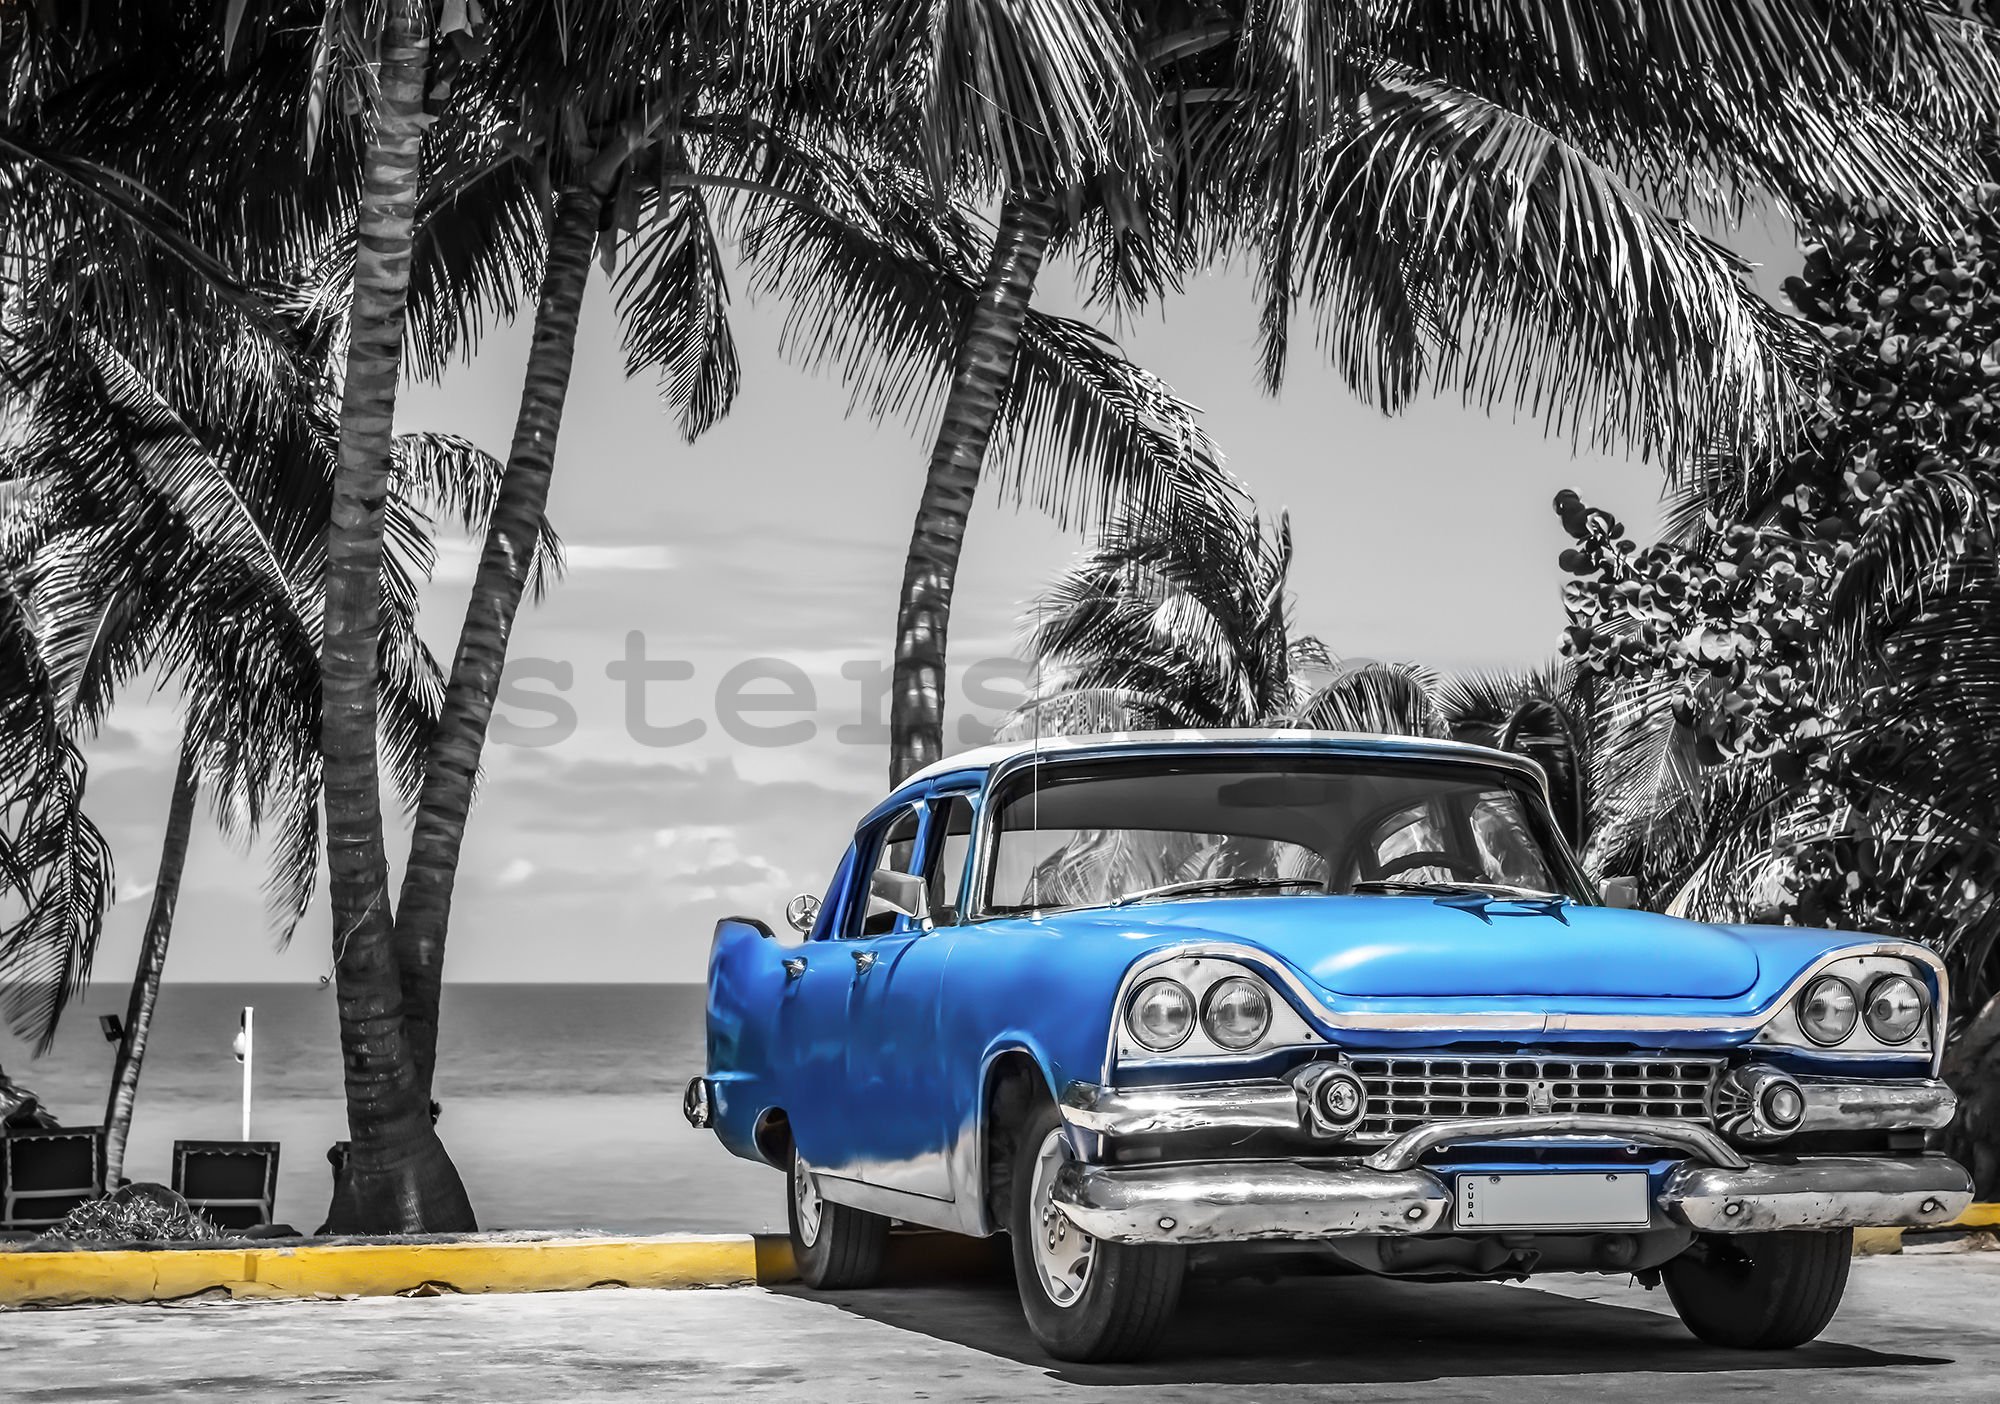 Fototapeta vliesová: Kuba modré auto u moře - 416x254 cm